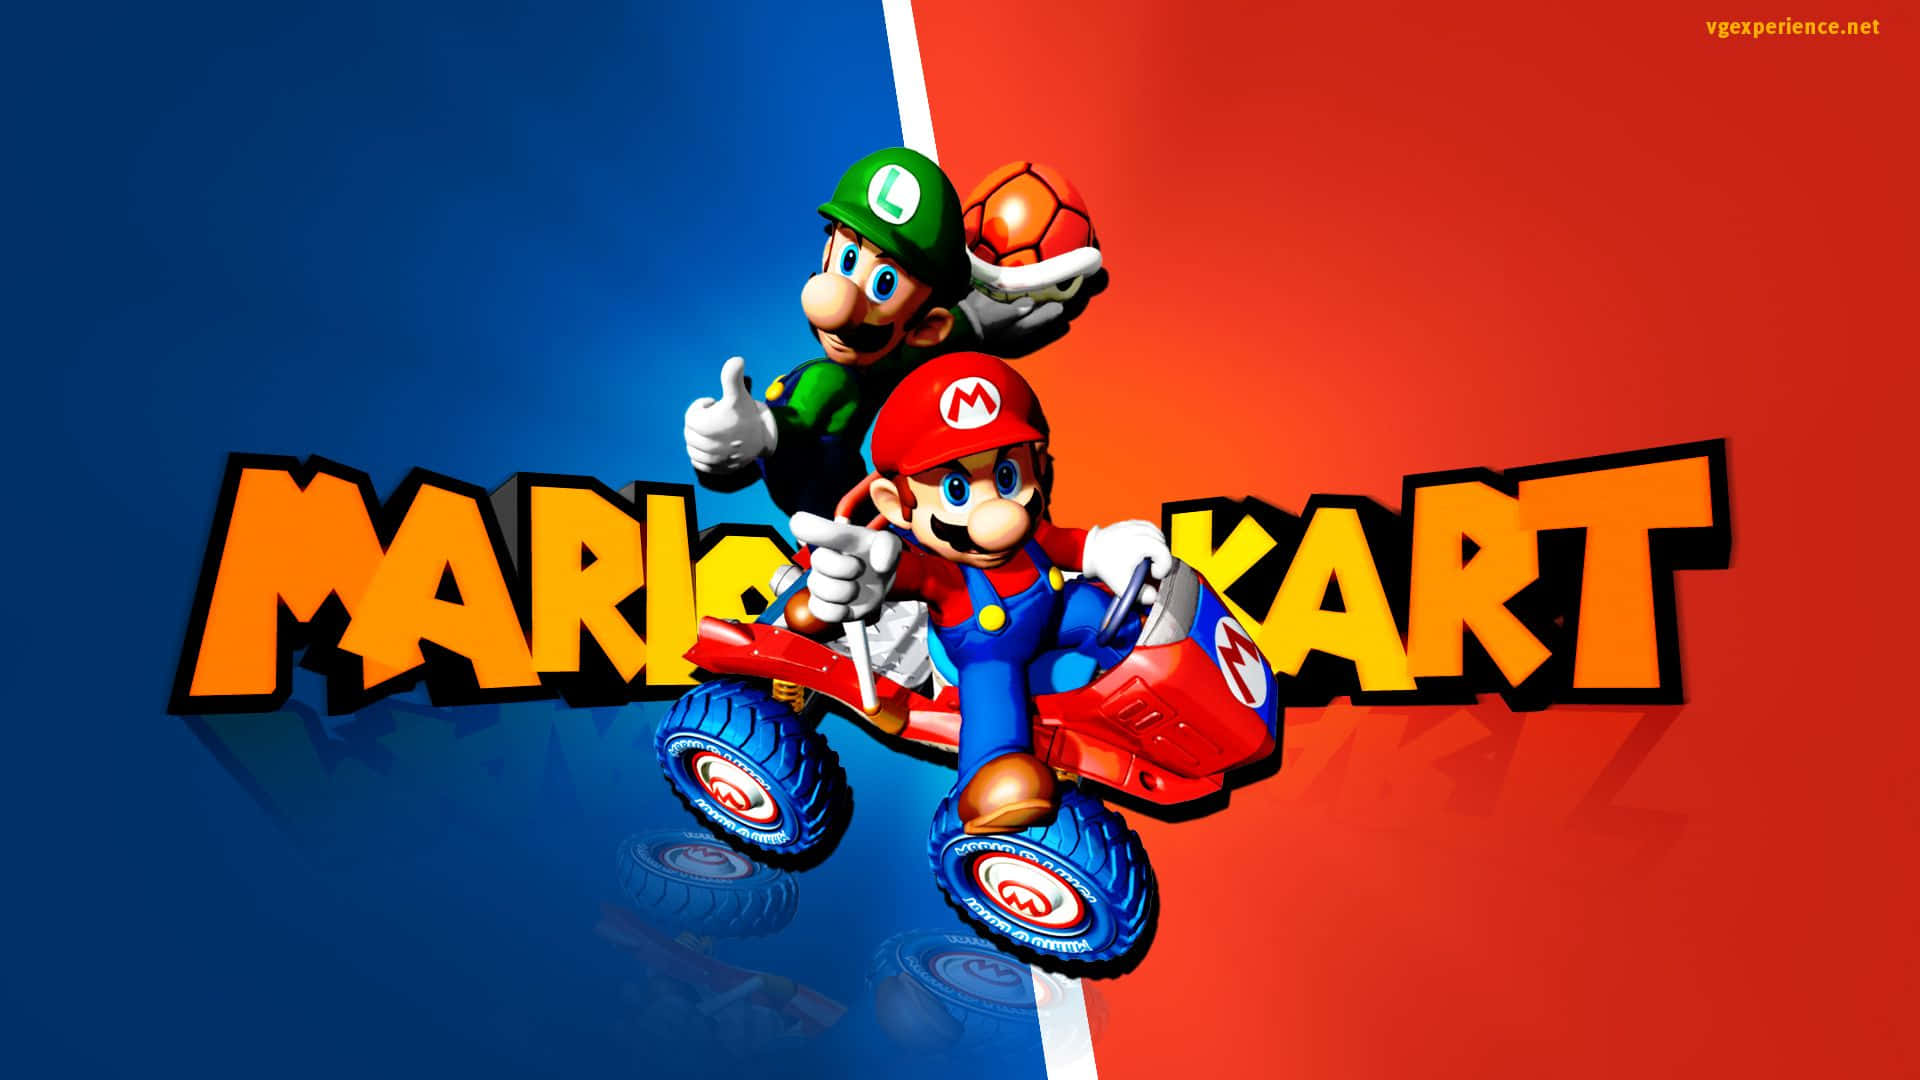 Erlebensie Den Gokart-spaß Mit Mario Kart!